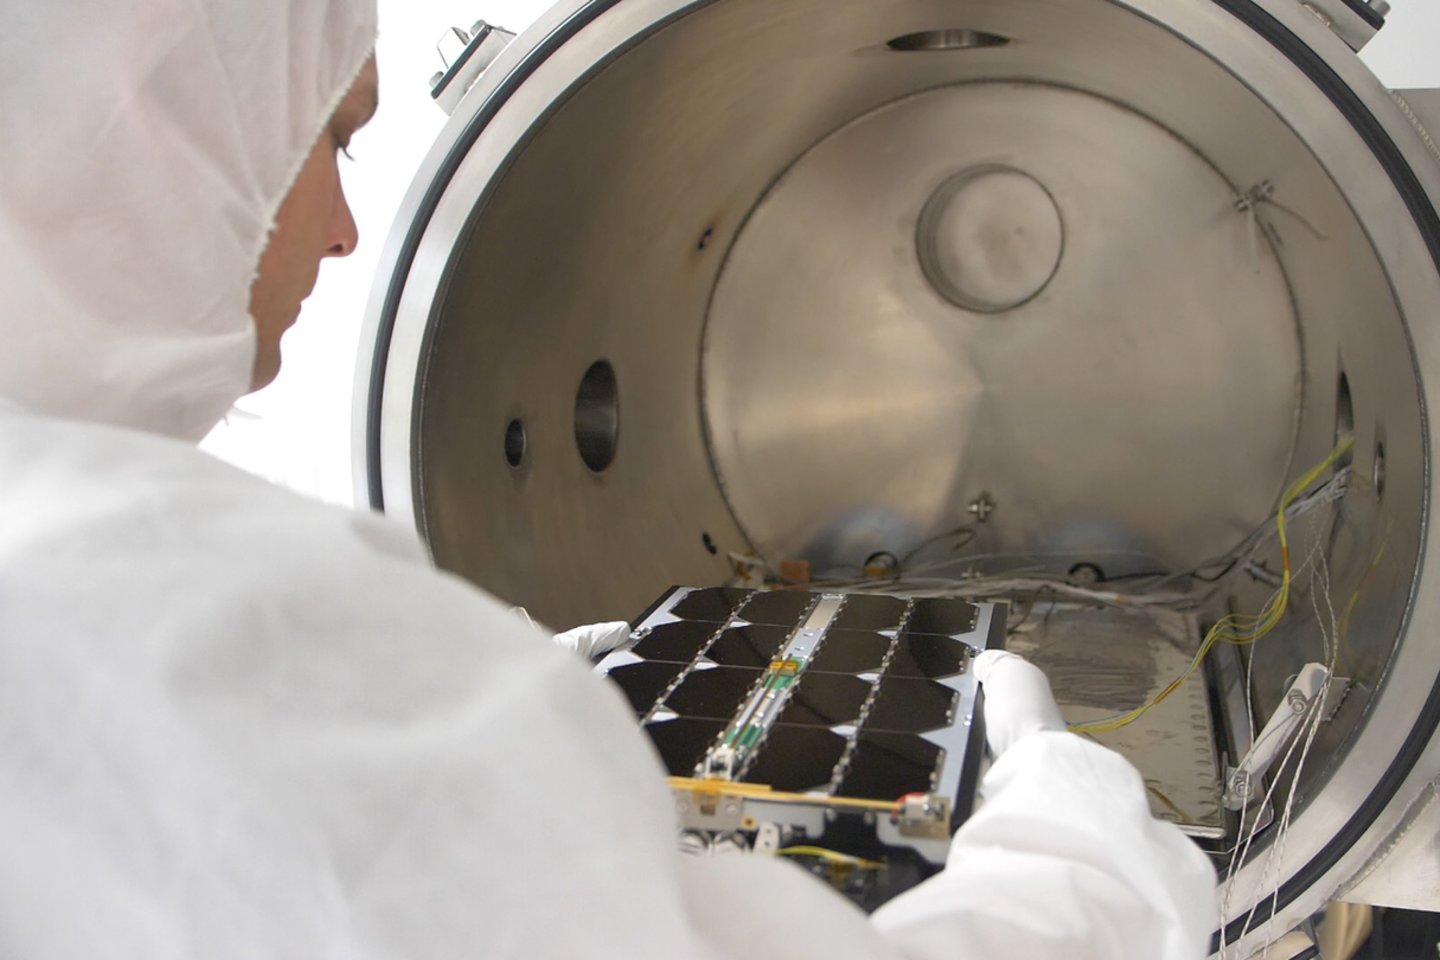  Kosmoso technologijų įmonė „NanoAvionics“ užsiima naujos kartos nanopalydovų bei jų subsistemų gamyba ir integracija.